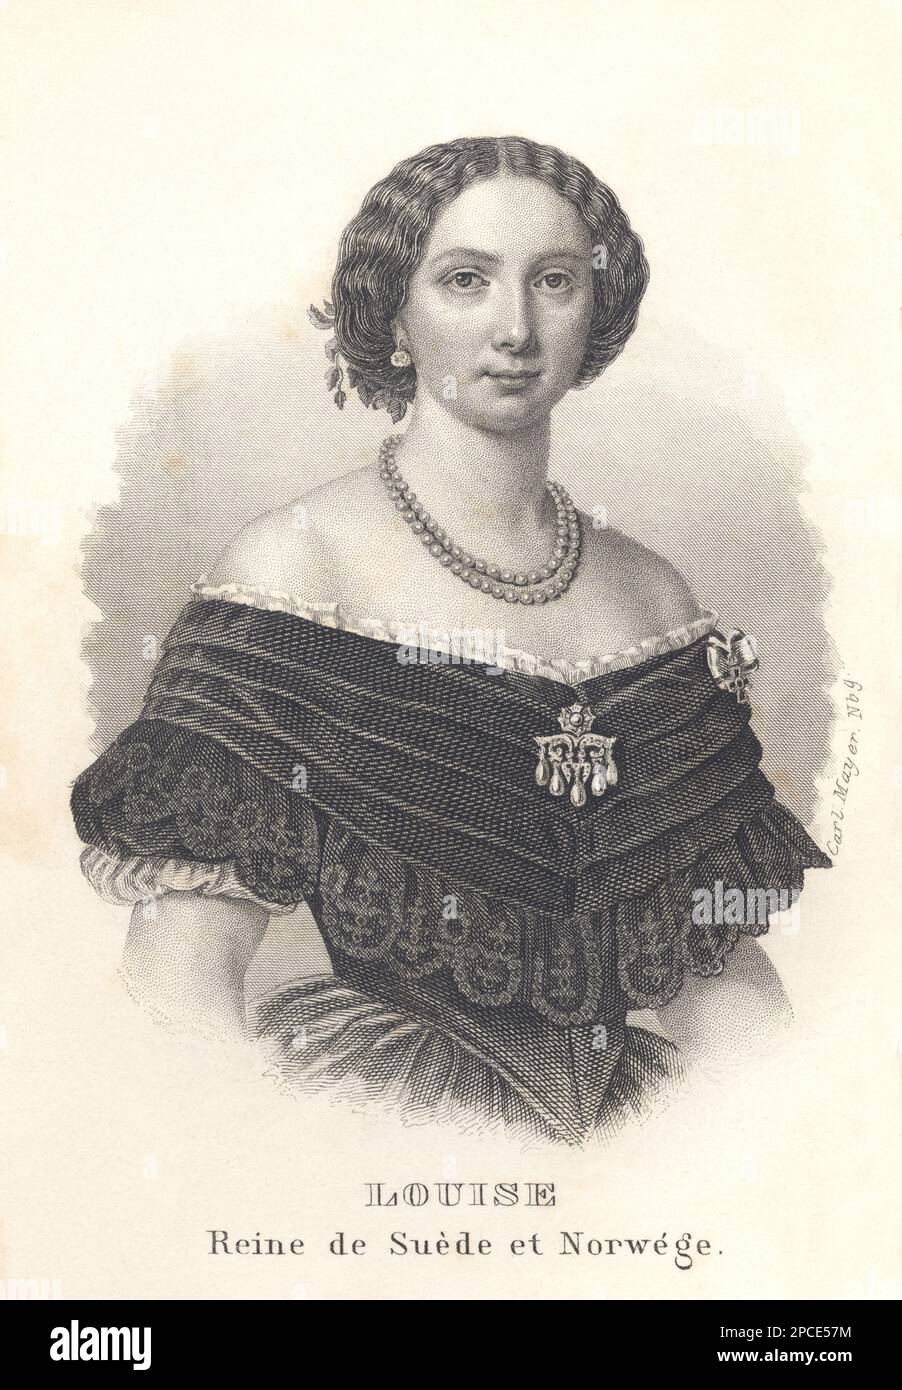 1861 : la regina di Svezia e Norvegia LOUISE (Louise dei Paesi Bassi, 1828-1871), coniuge di re Carlo XV di Svezia e IV di Norvegia. Ritratto inciso da ALMANACH DE GOTHA , 1861. Suo padre era il principe Frederik dei Paesi Bassi, il secondo figlio di re Willem i dei Paesi Bassi e Wilhelmina di Prussia. Sua madre era la principessa Louise dei Paesi Bassi (nata principessa Louise di Prussia), l'ottavo figlio del re Friederich Wilhelm III di Prussia e Luise di Meclemburgo-Strelitz . La principessa Louise sposò in holm il 19 giugno 1850 il principe ereditario Carl di Svezia e la Norvegia, il figlio Foto Stock